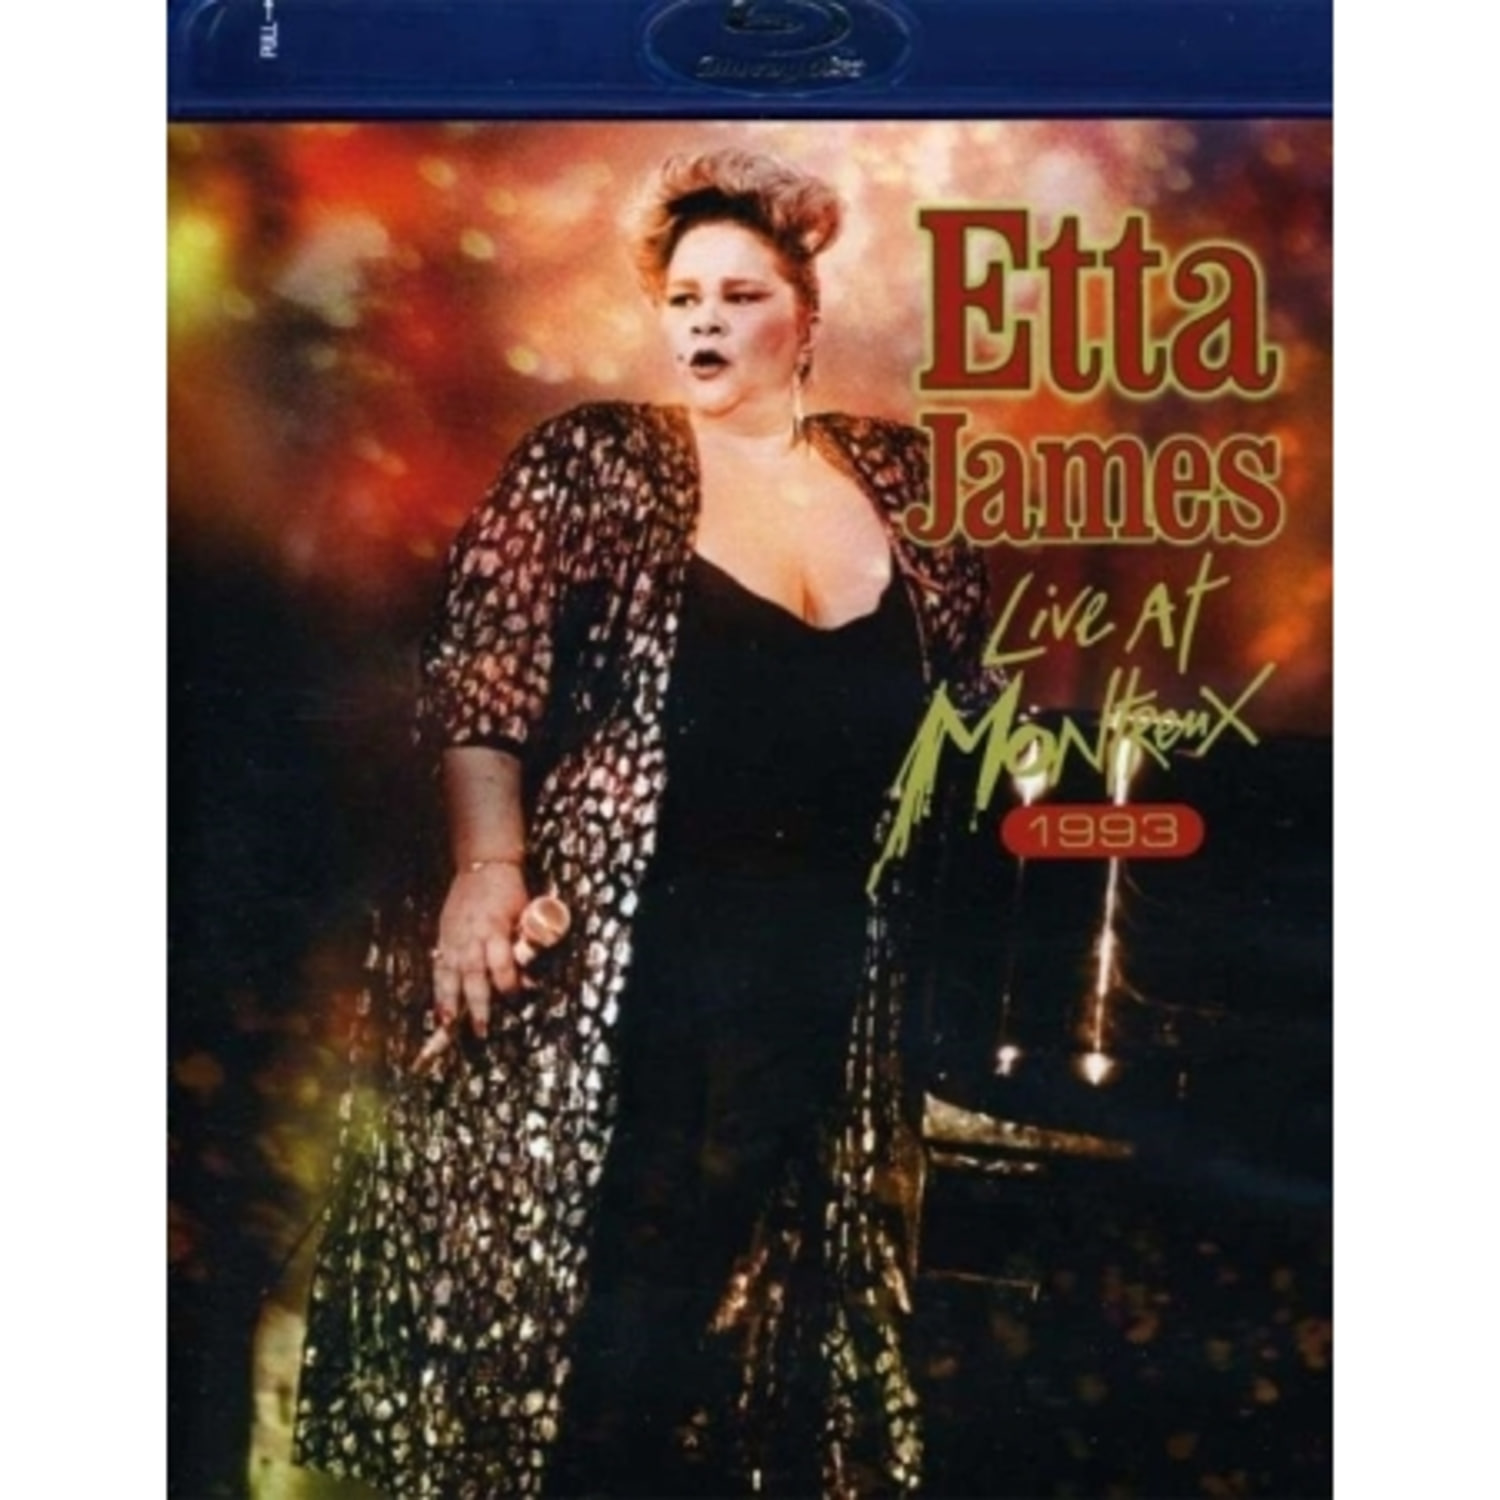 ETTA JAMES - LIVE AT MONTREUX 1975-1993 (1 DISC)